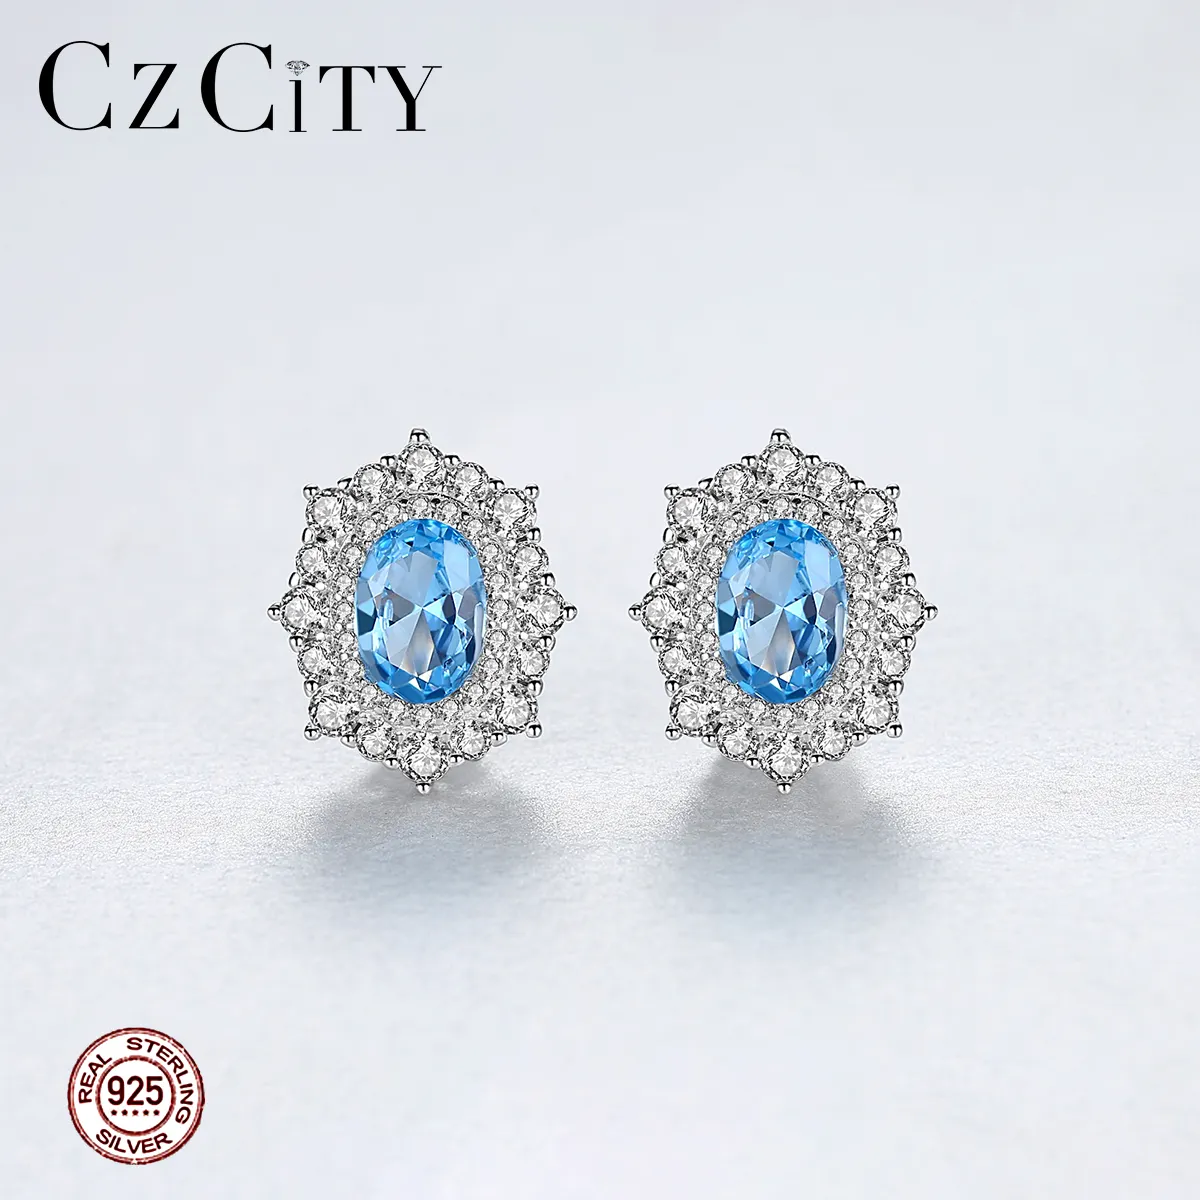 CZCITY-pendientes de plata 925 con Topacio azul para mujer, joyería con forma de flor de nieve, aretes grandes de piedras preciosas